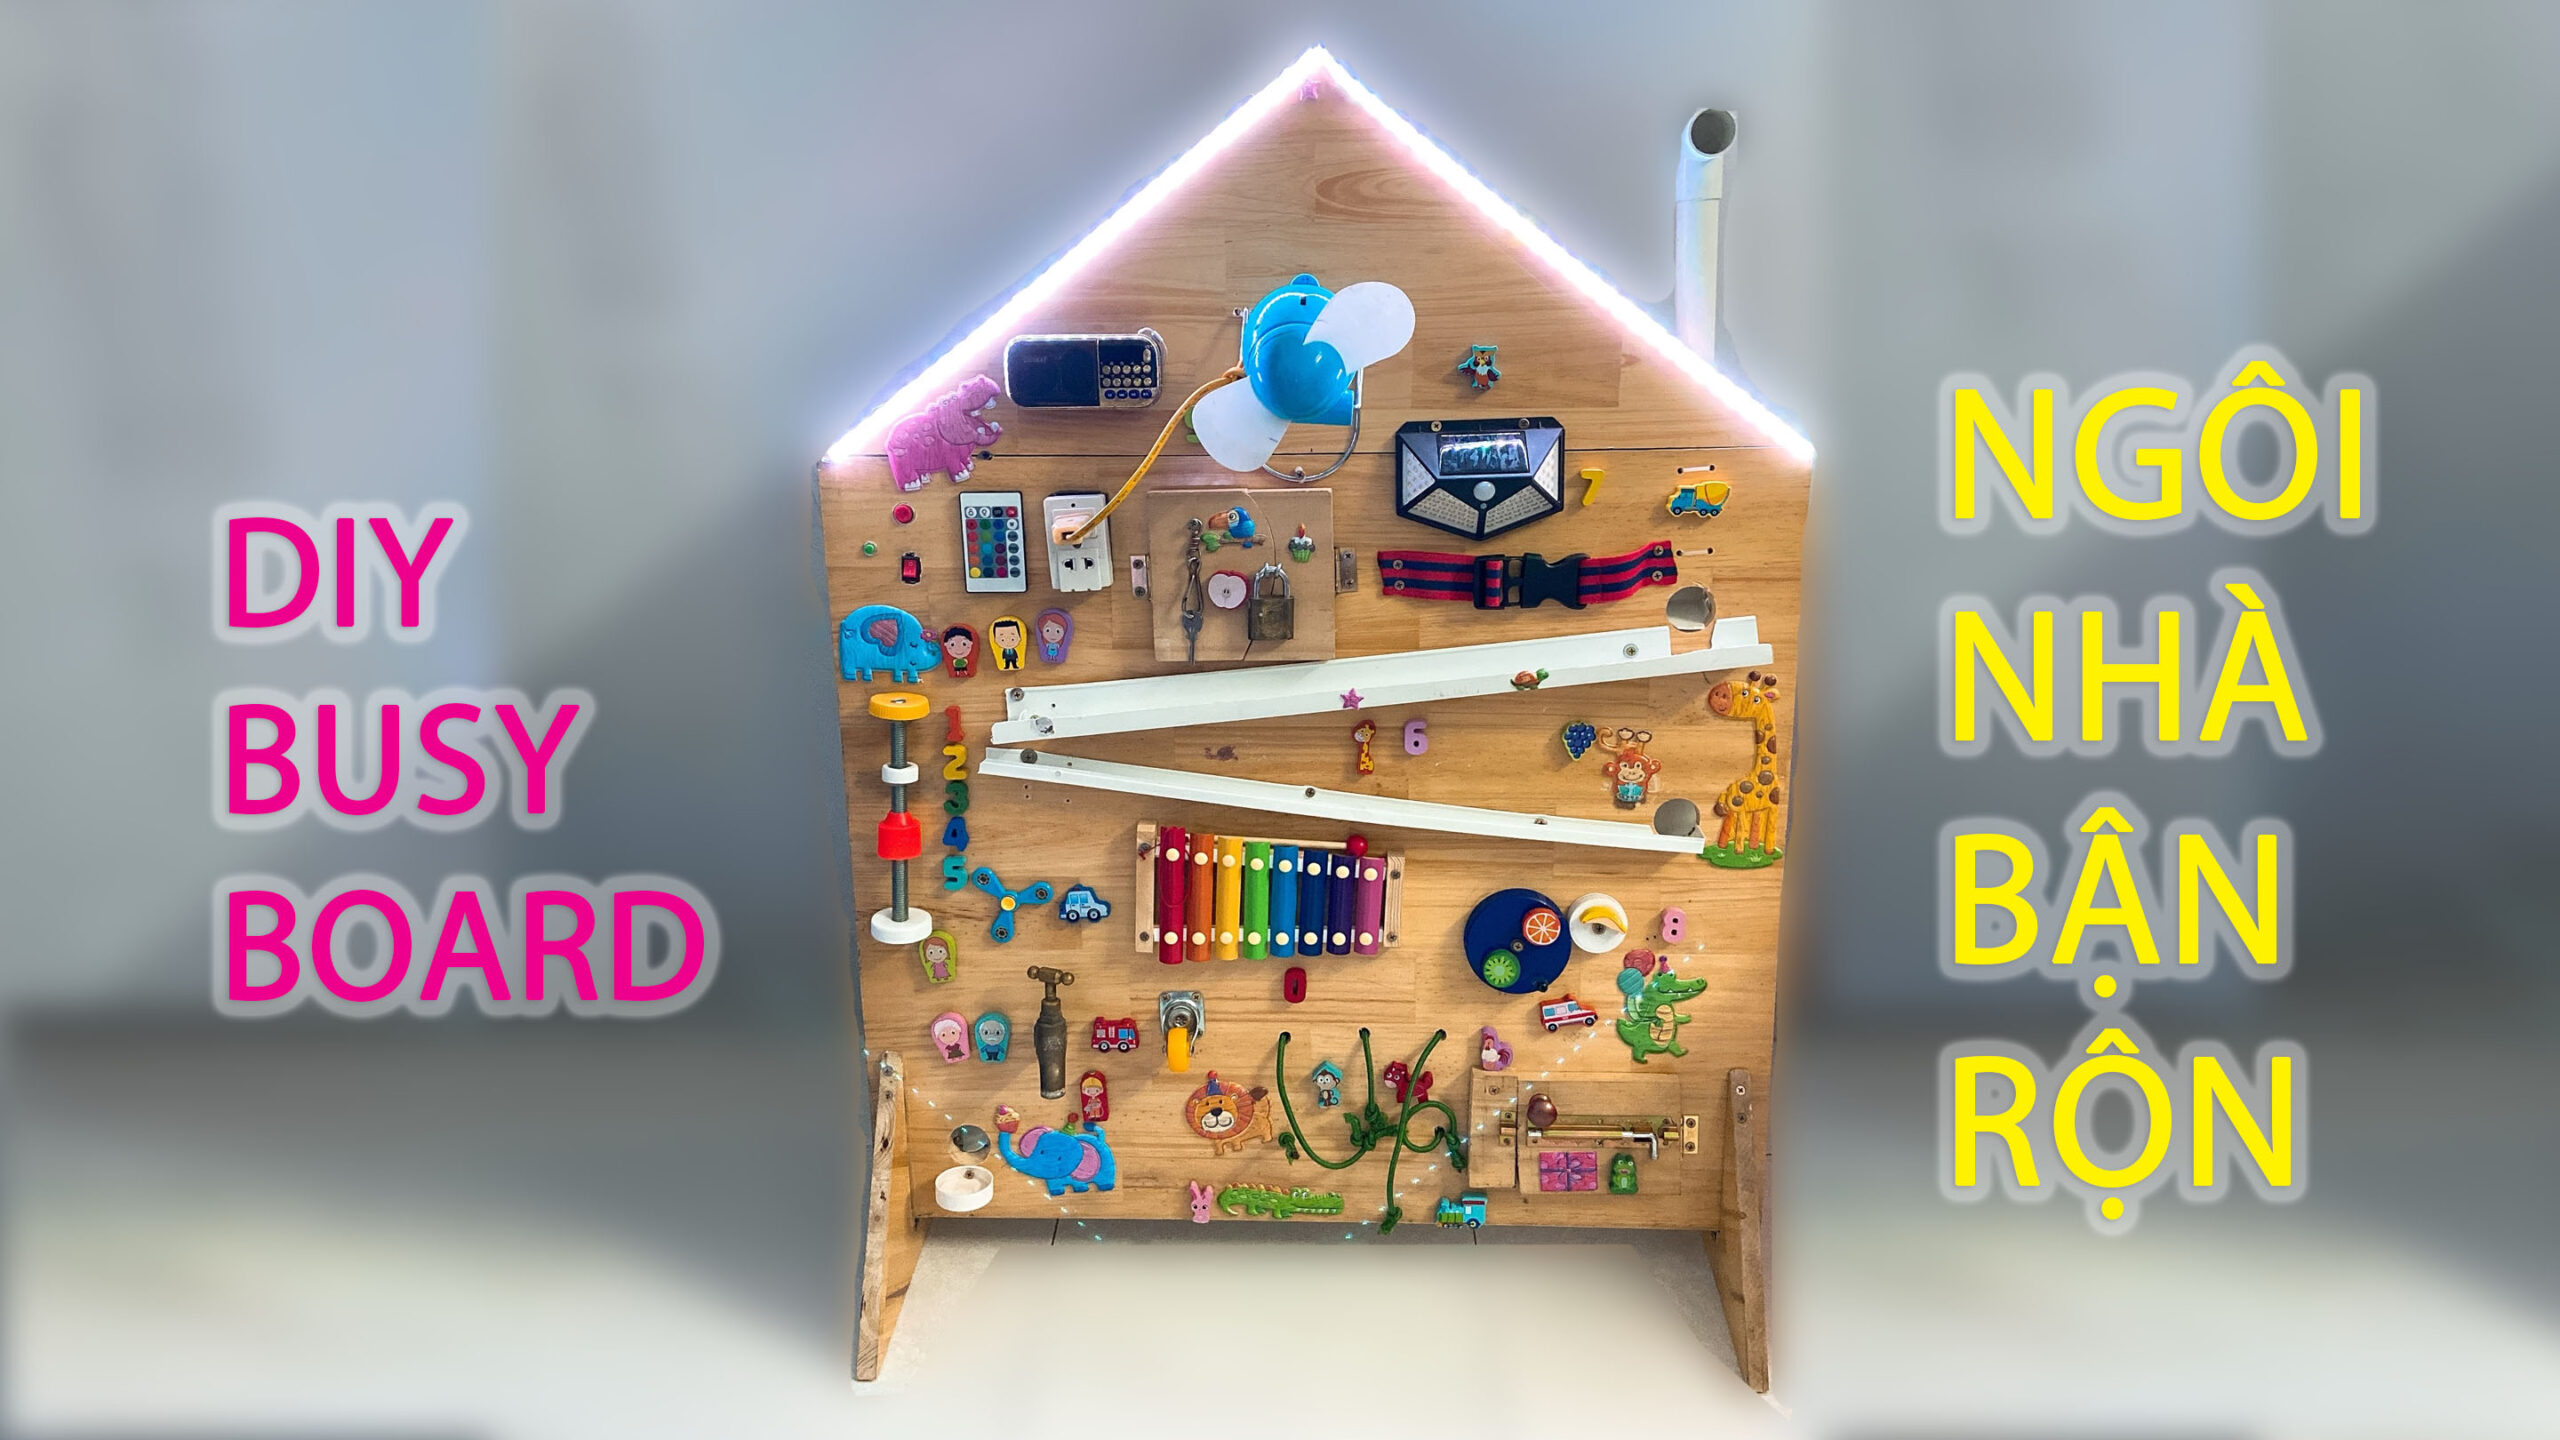 Tự làm đồ chơi ngôi nhà bận rộn cho bé – DIY Busy Board For Kids